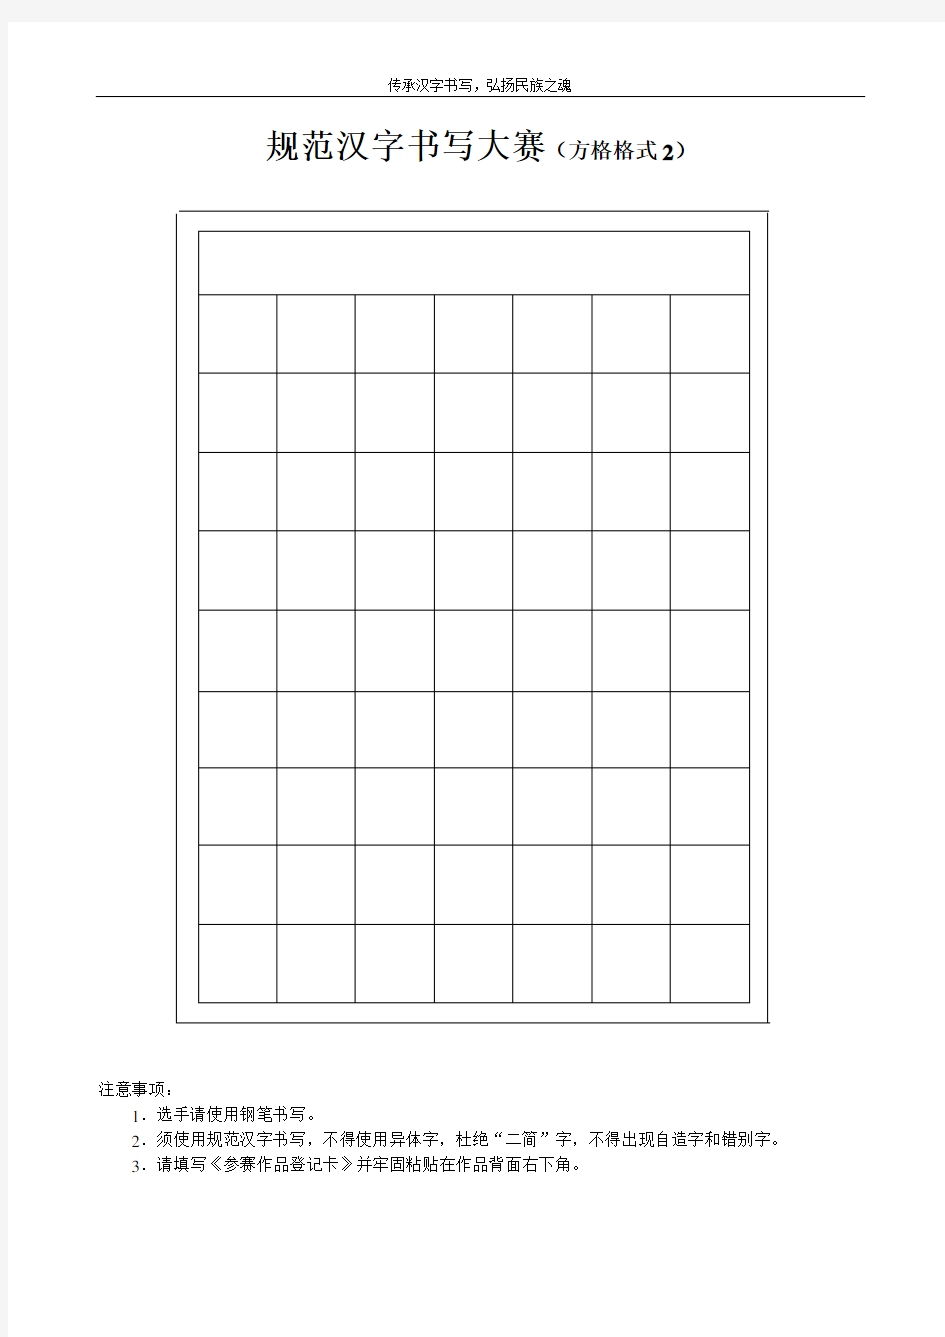 规范汉字书写大赛方格格式1